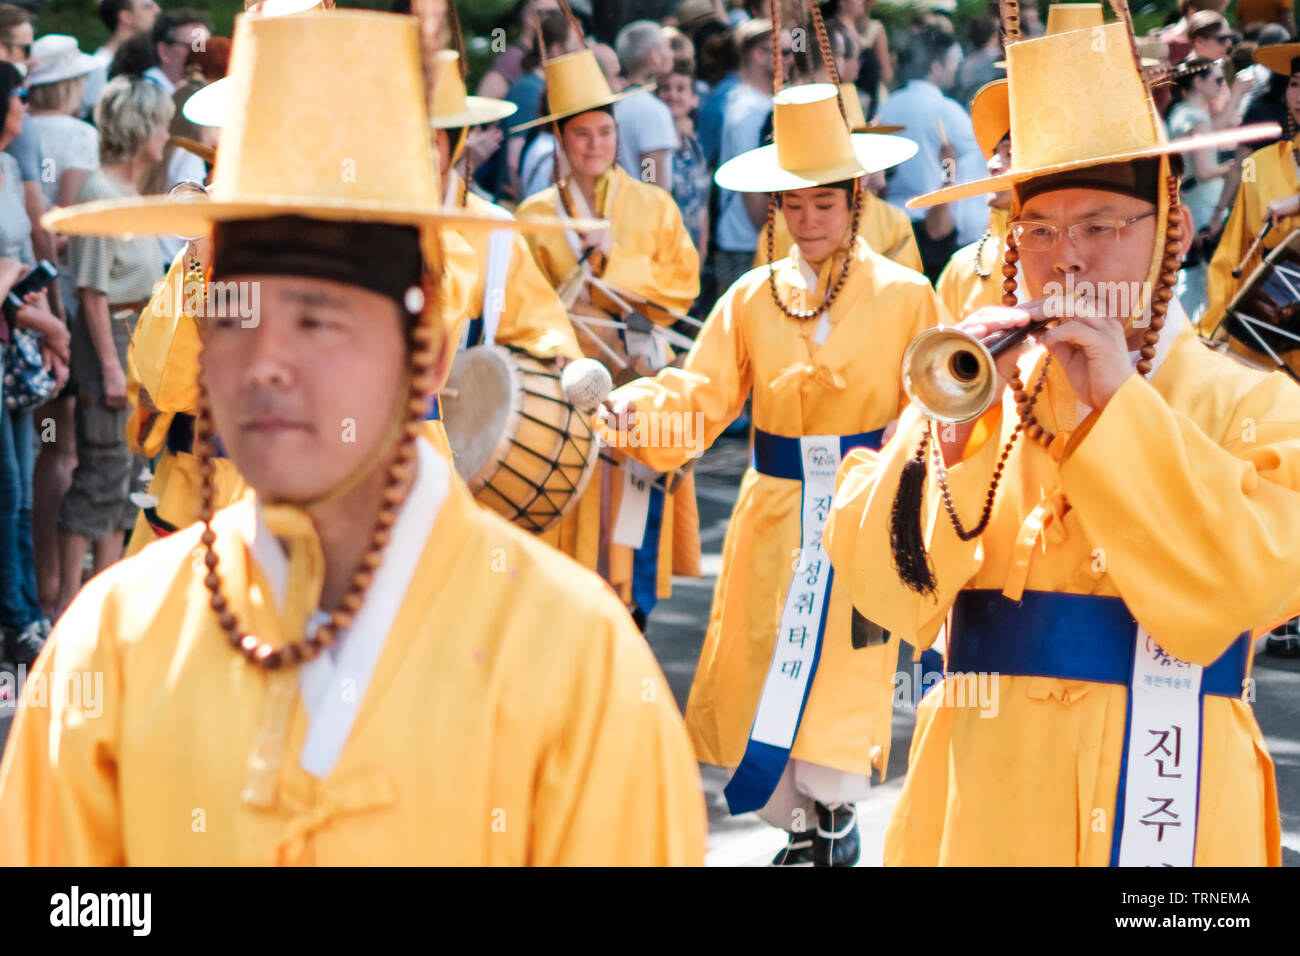 Berlin, Deutschland - Juni 2019: koreanische Menschen in traditionellen Kostümen am Karneval der Kulturen (Karneval der Kulturen) in Berlin durchführen Stockfoto